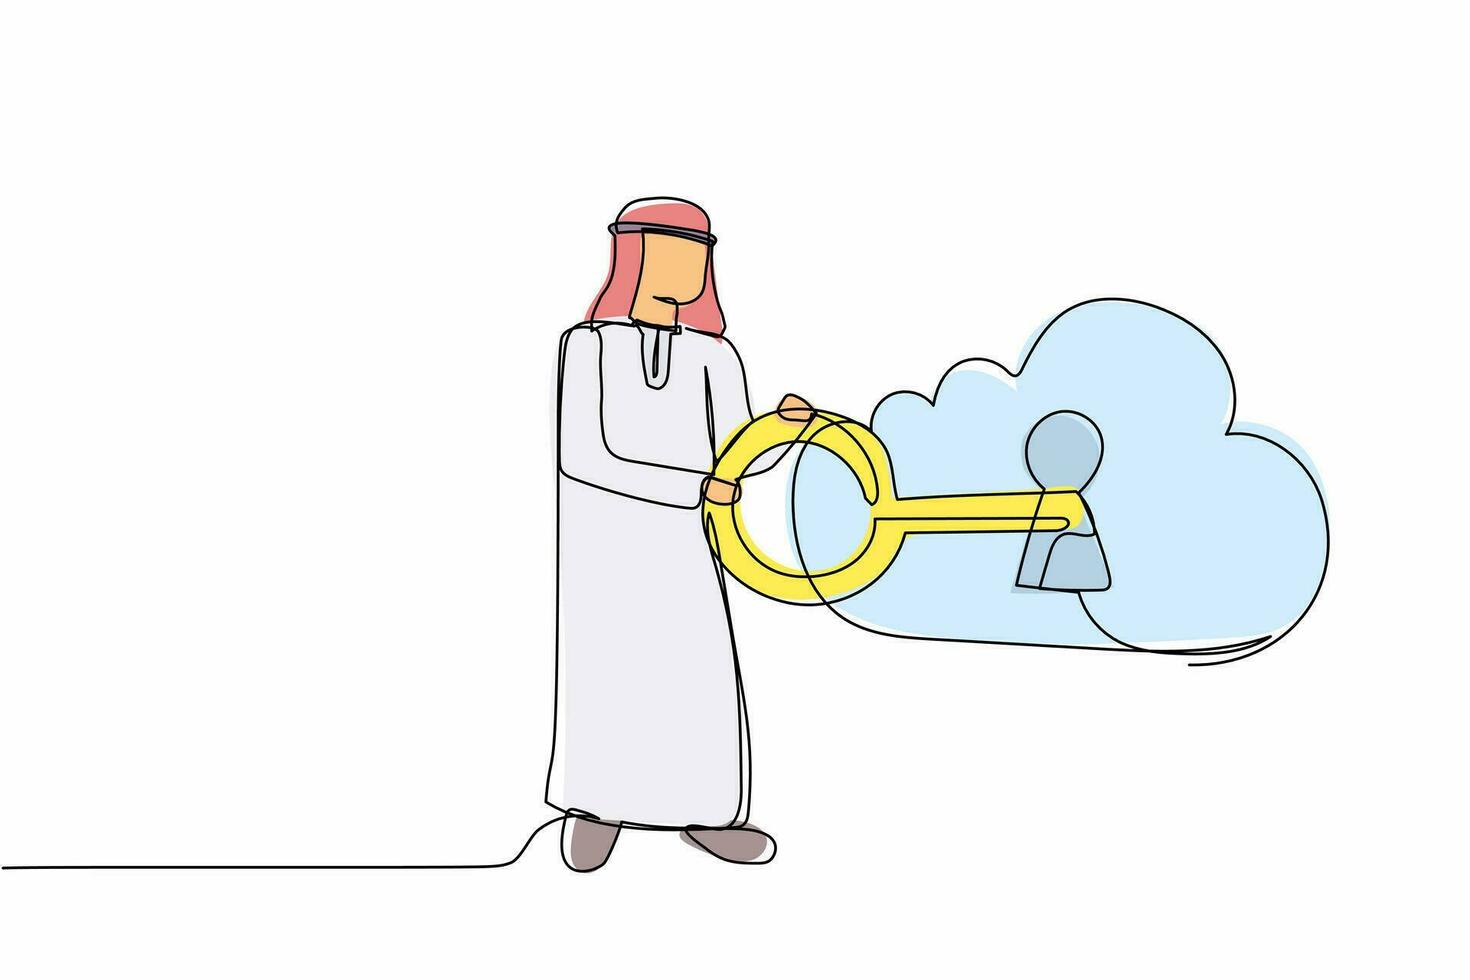 un solo hombre de negocios árabe de dibujo de línea continua que pone una gran llave en la nube. almacenamiento de seguridad. autenticación de seguridad de bloqueo de contraseña en la nube. tecnología de Internet. ilustración de vector de diseño de dibujo de una línea